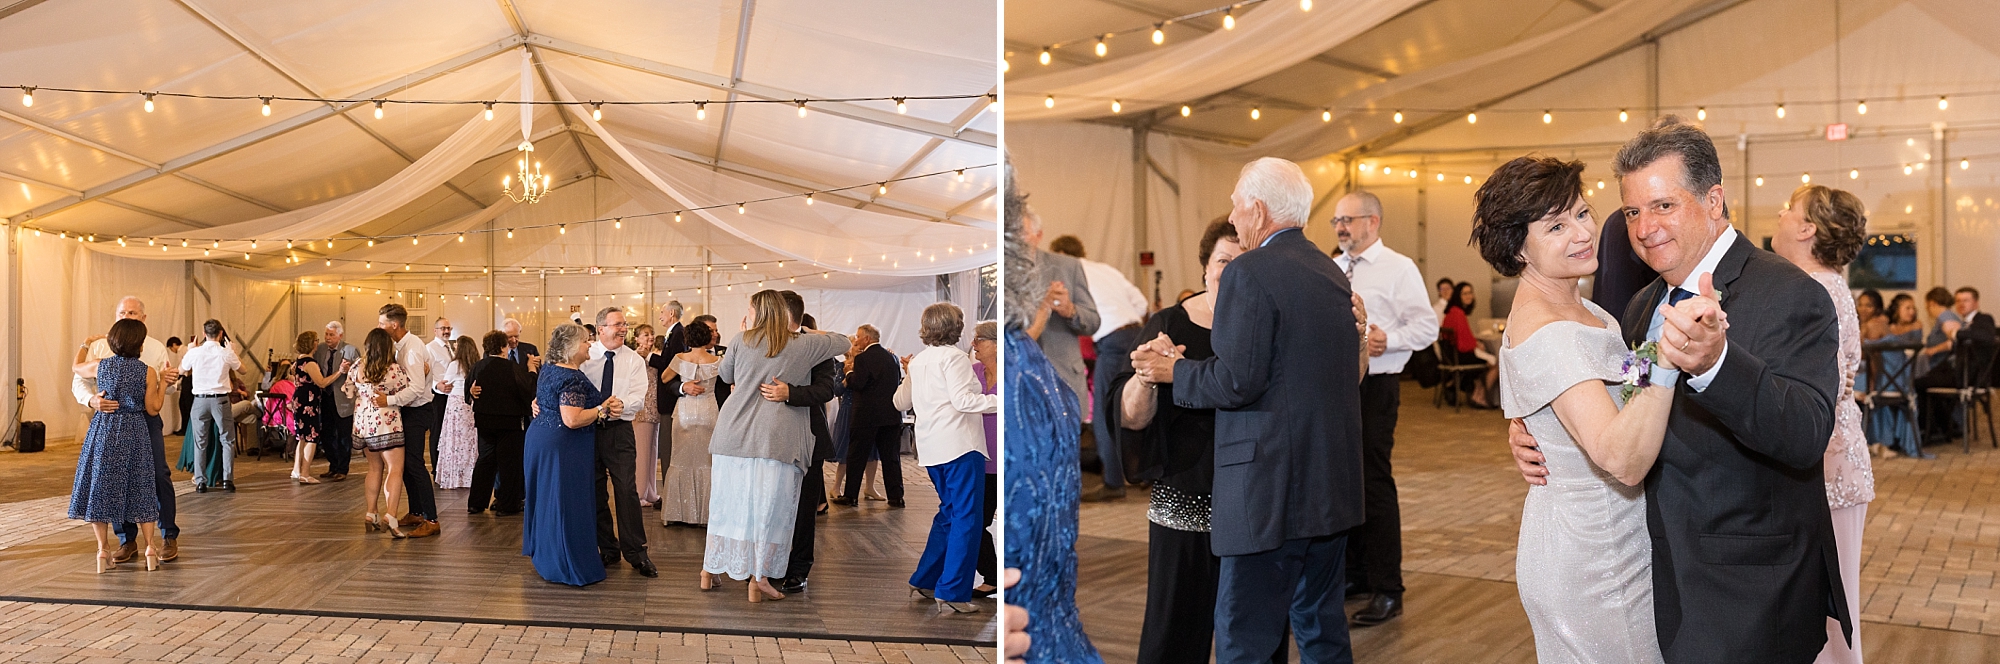 Wedding guests dancing - Raleigh NC Wedding Photographer - Sarah Hinckley Photography